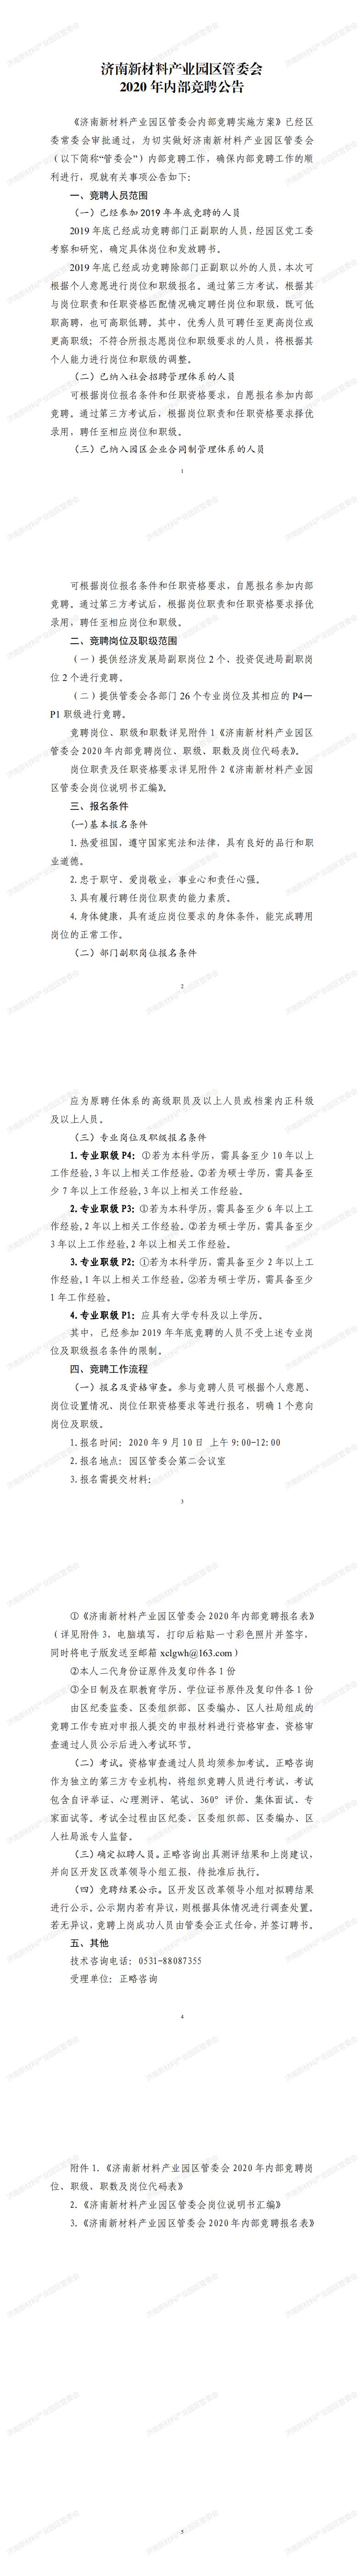 济南新材料产业园区管委会2020年内部竞聘公告_0.jpg